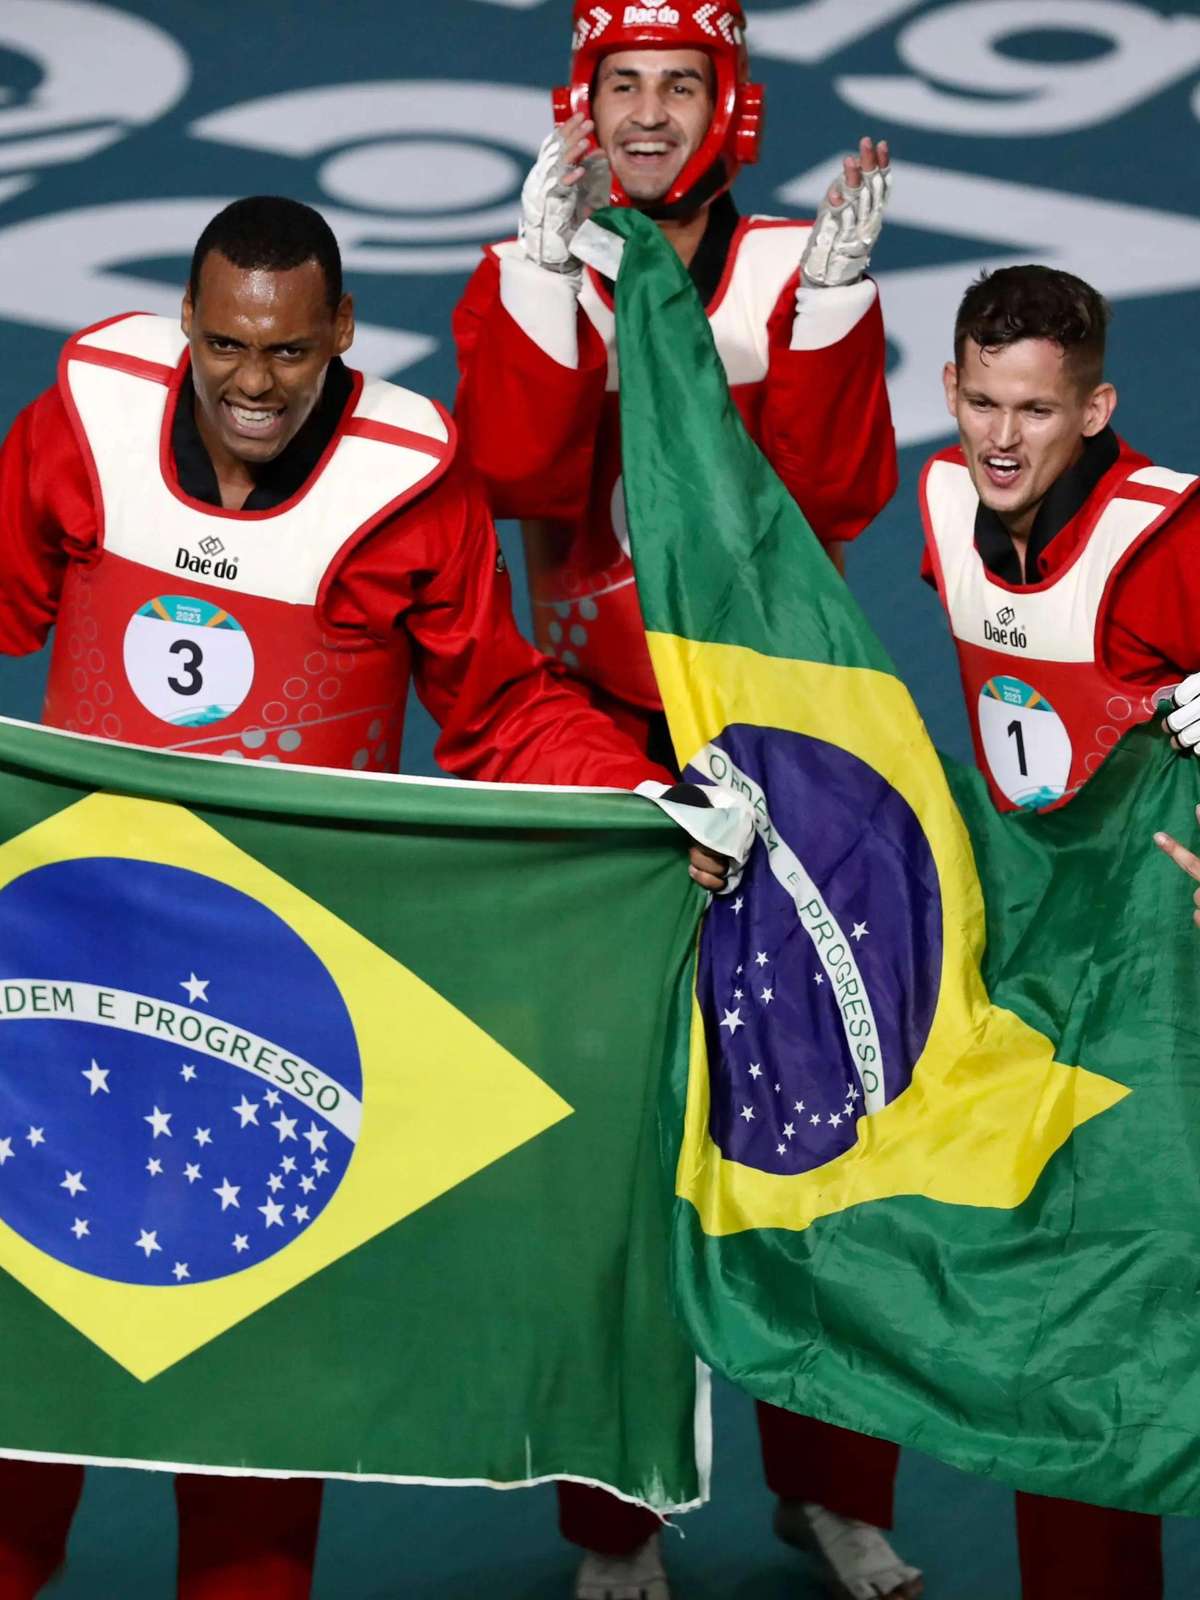 De forma heroica, Brasil conquista ouro e bronze por equipes no